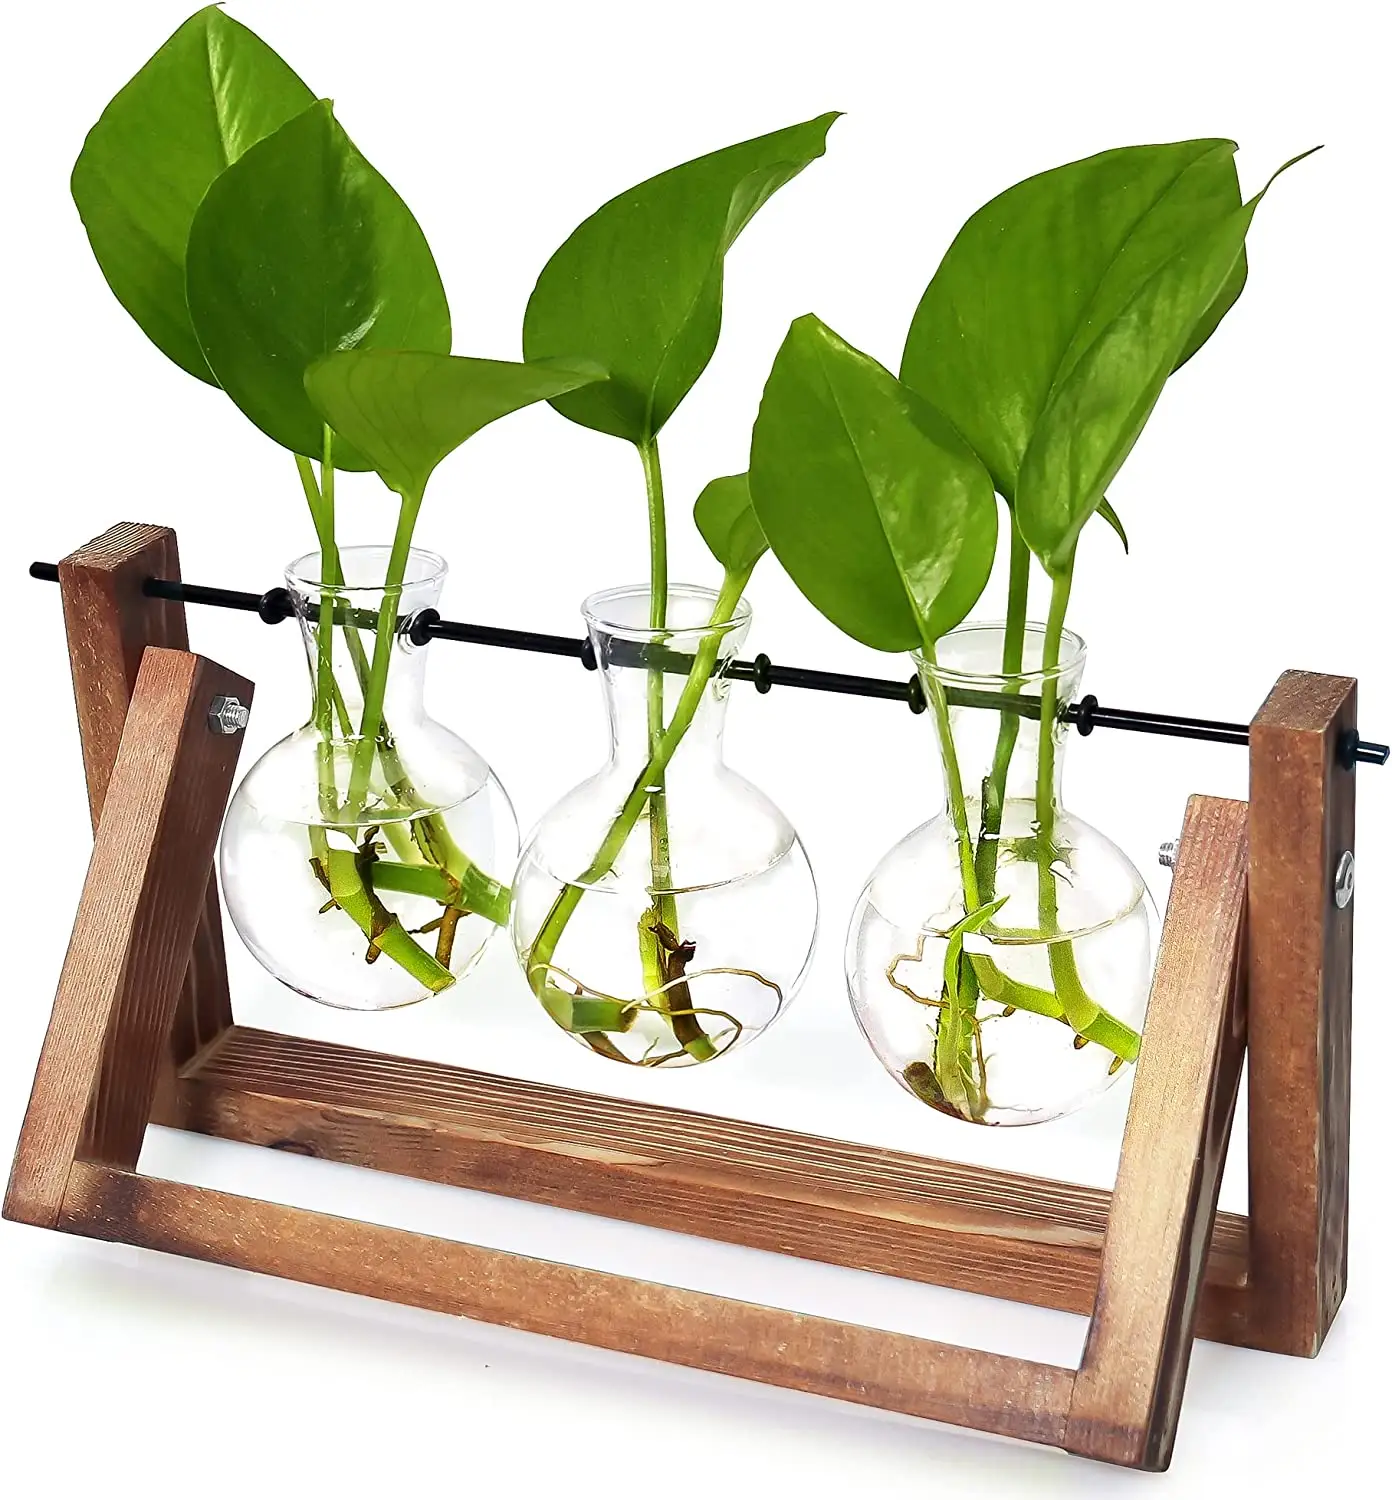 Terrário de plantas de vidro, suporte retrô de madeira sólida e metal giratório, suporte para hidroponia, plantas, jardim, casa